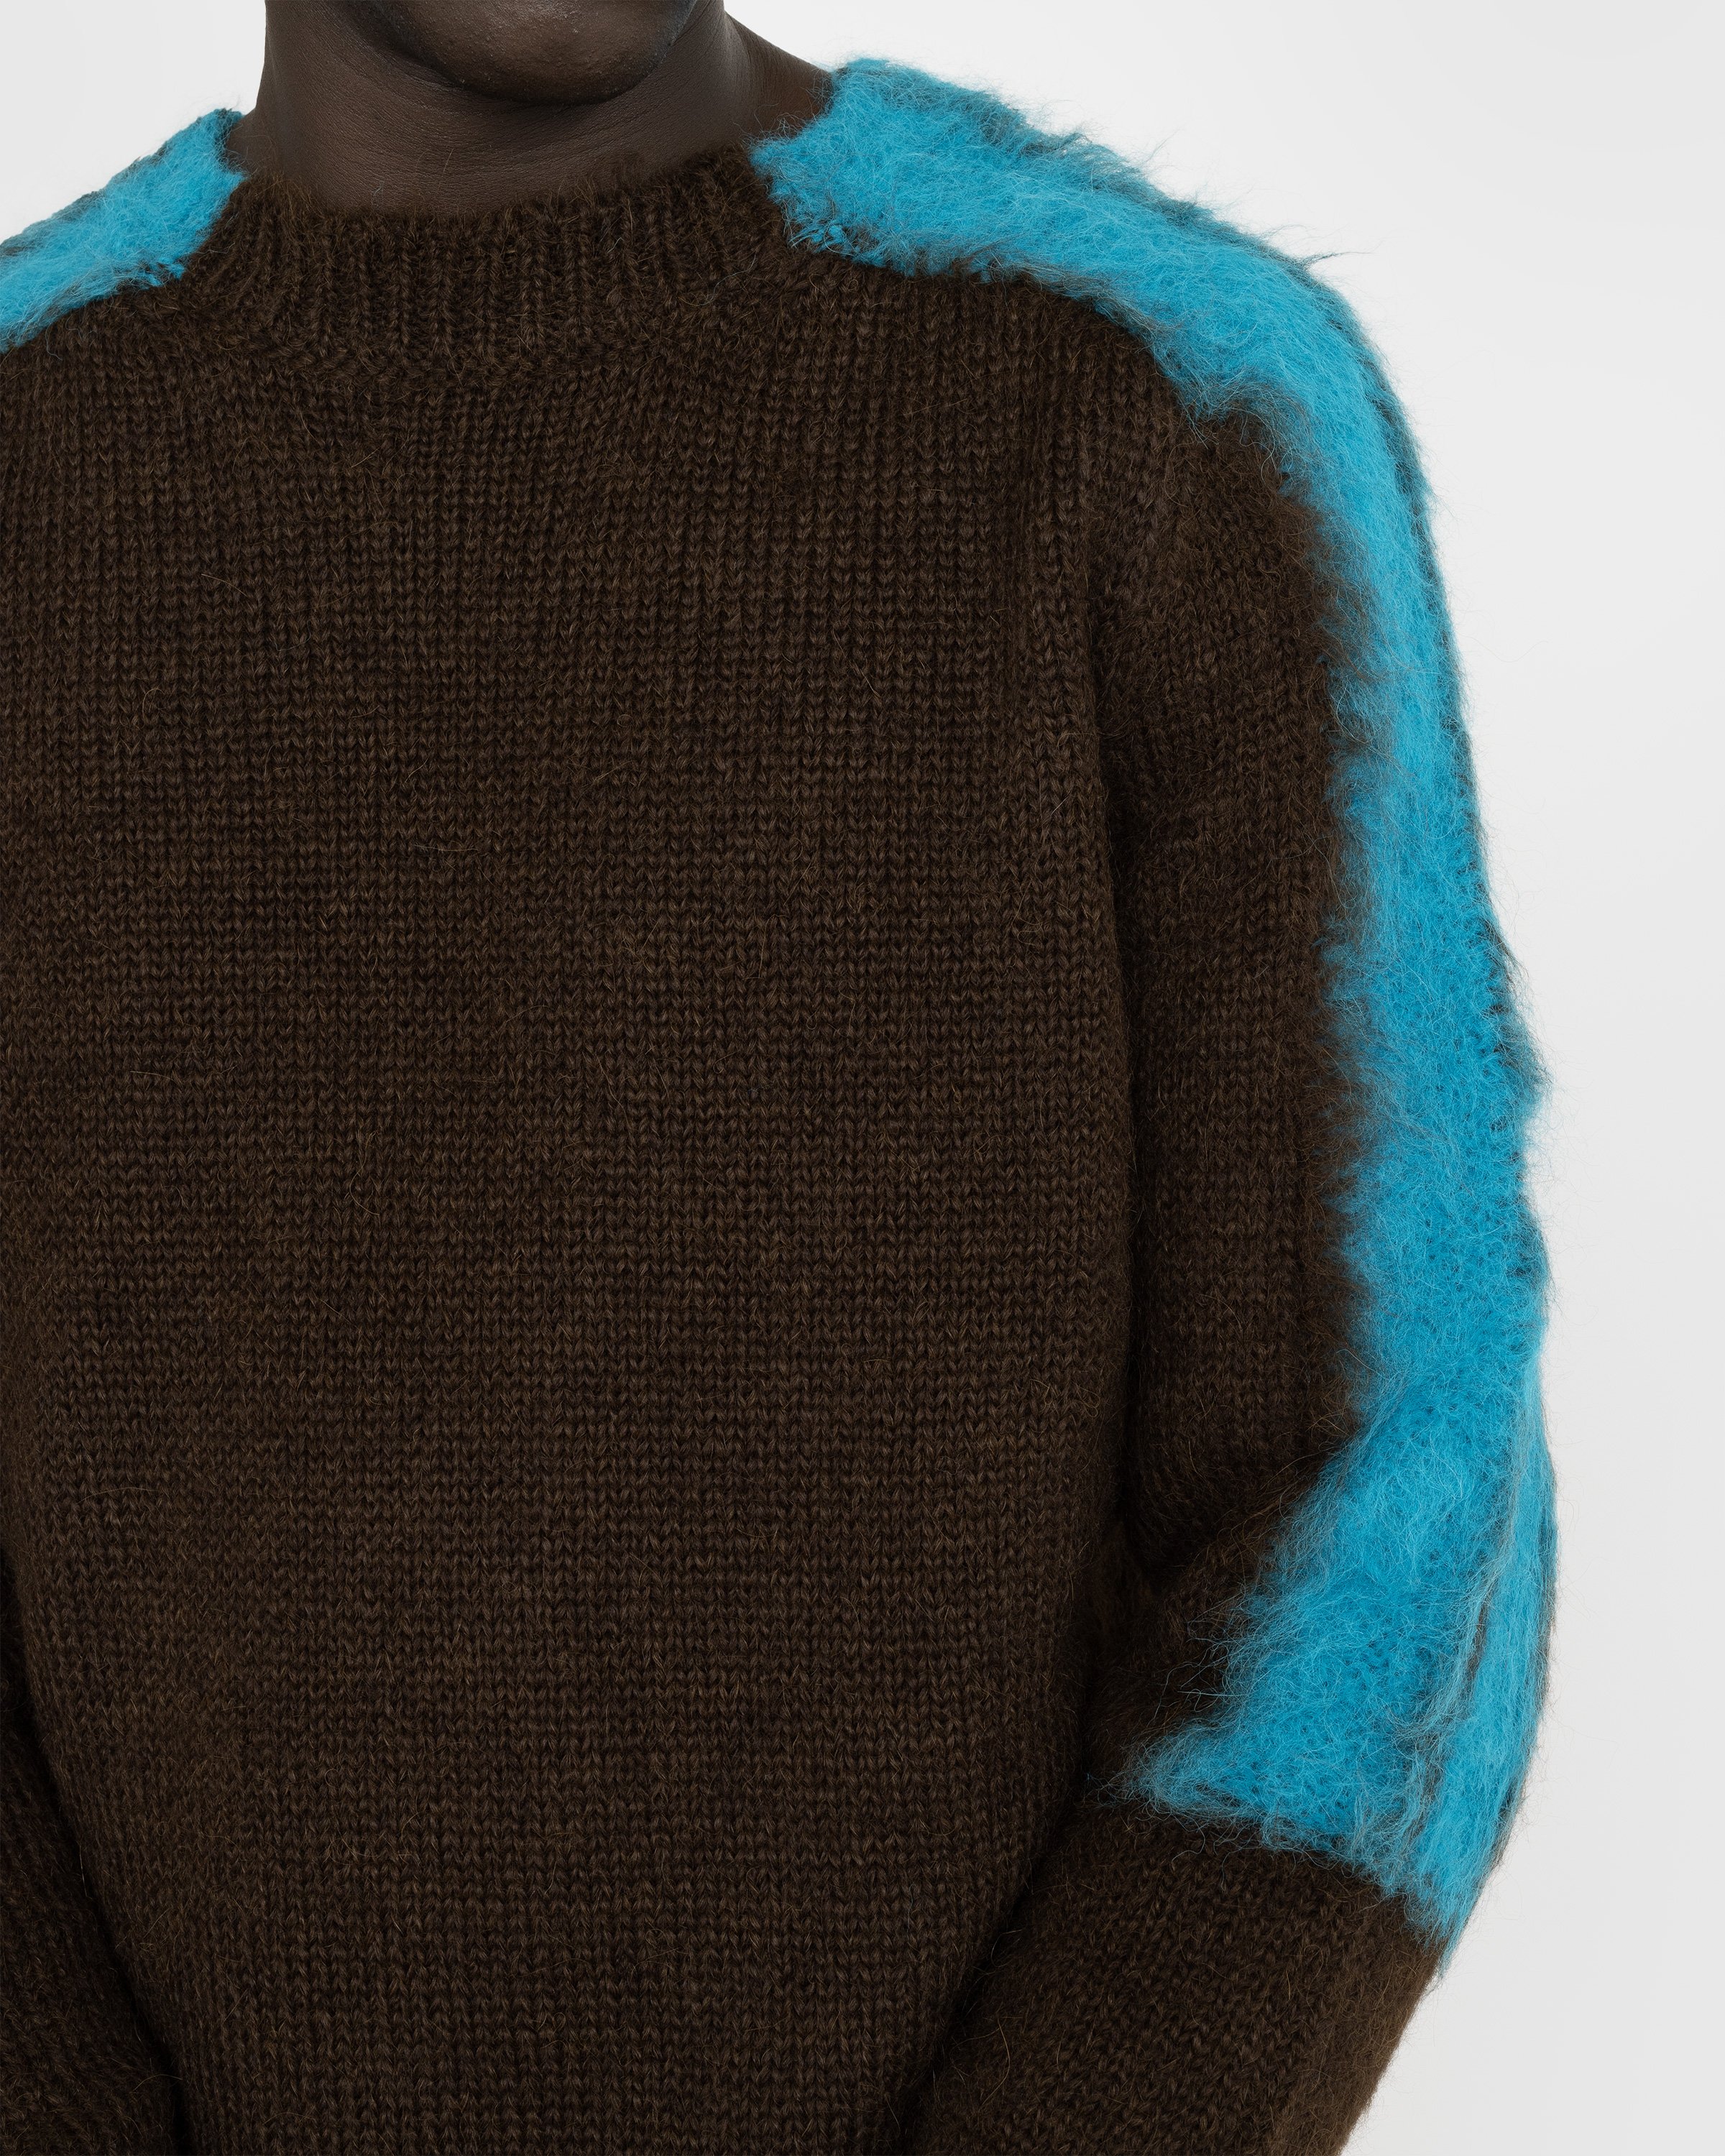 Jil Sander - Striped Alpaca Wool Sweater Brown/Blue - Clothing - Brown - Image 5